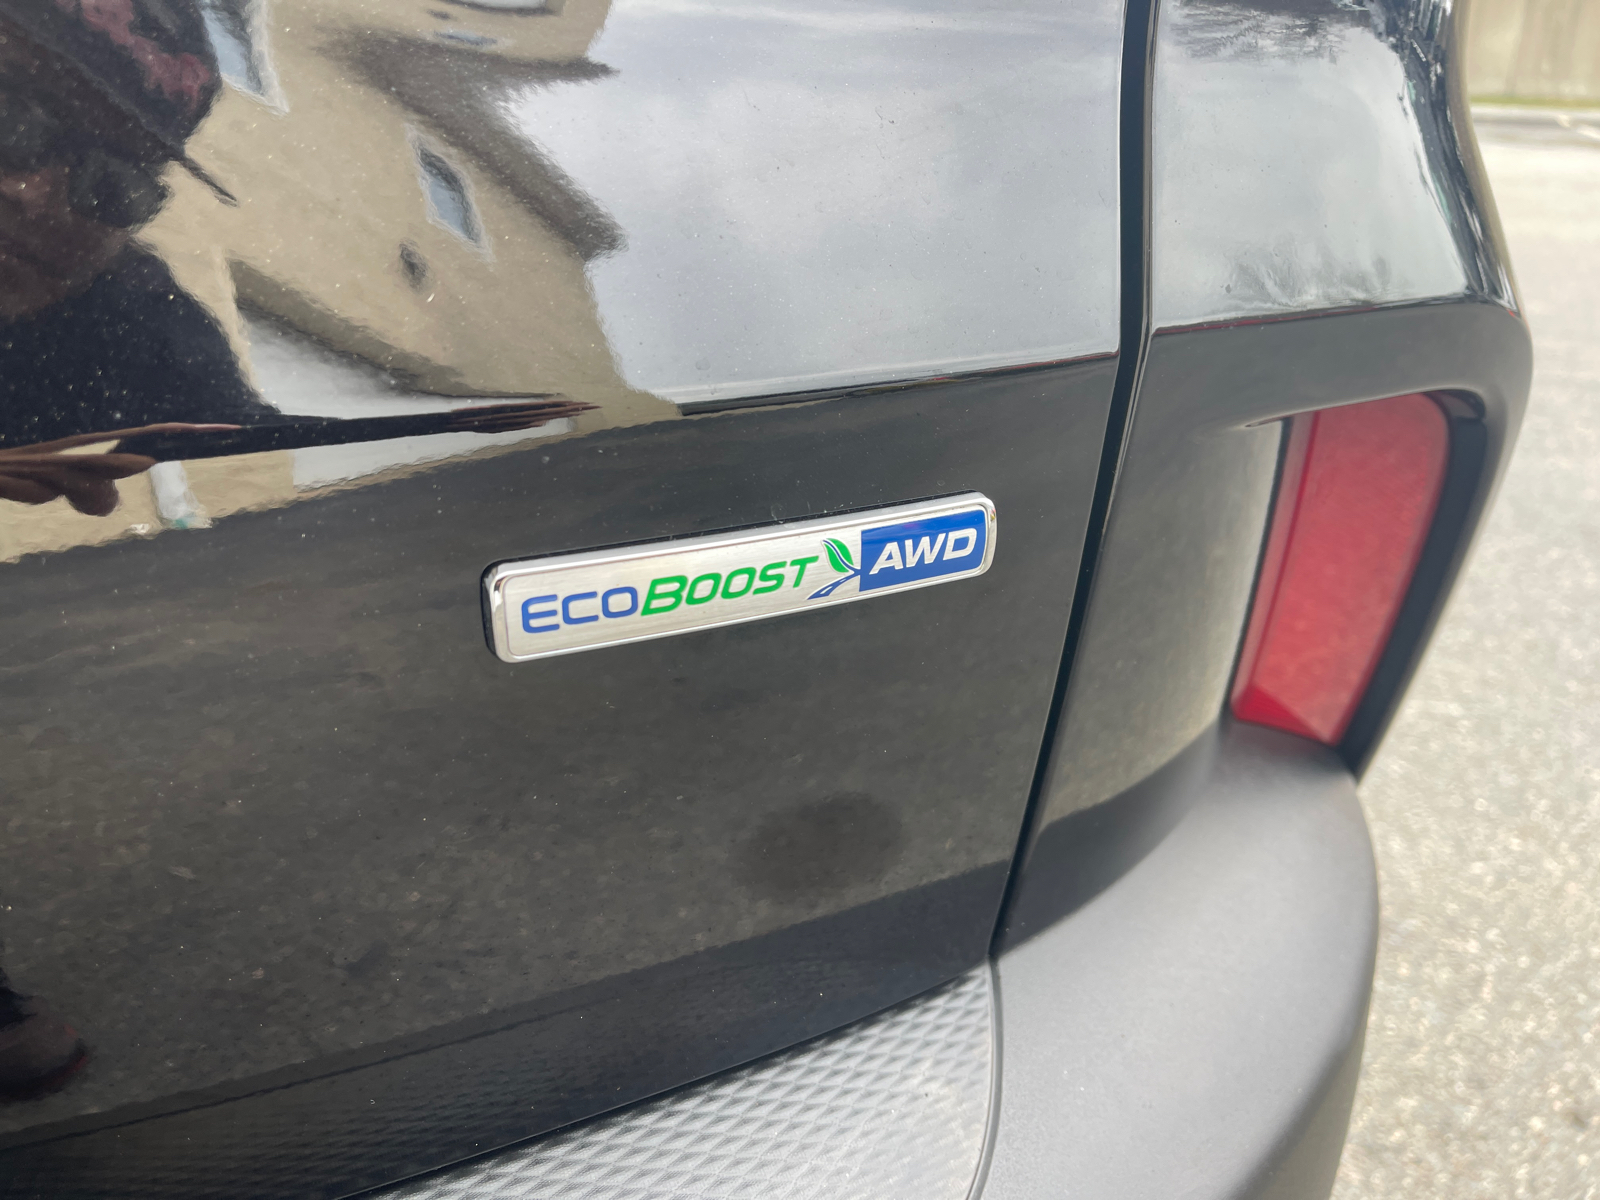 2020 Ford Escape SEL 11